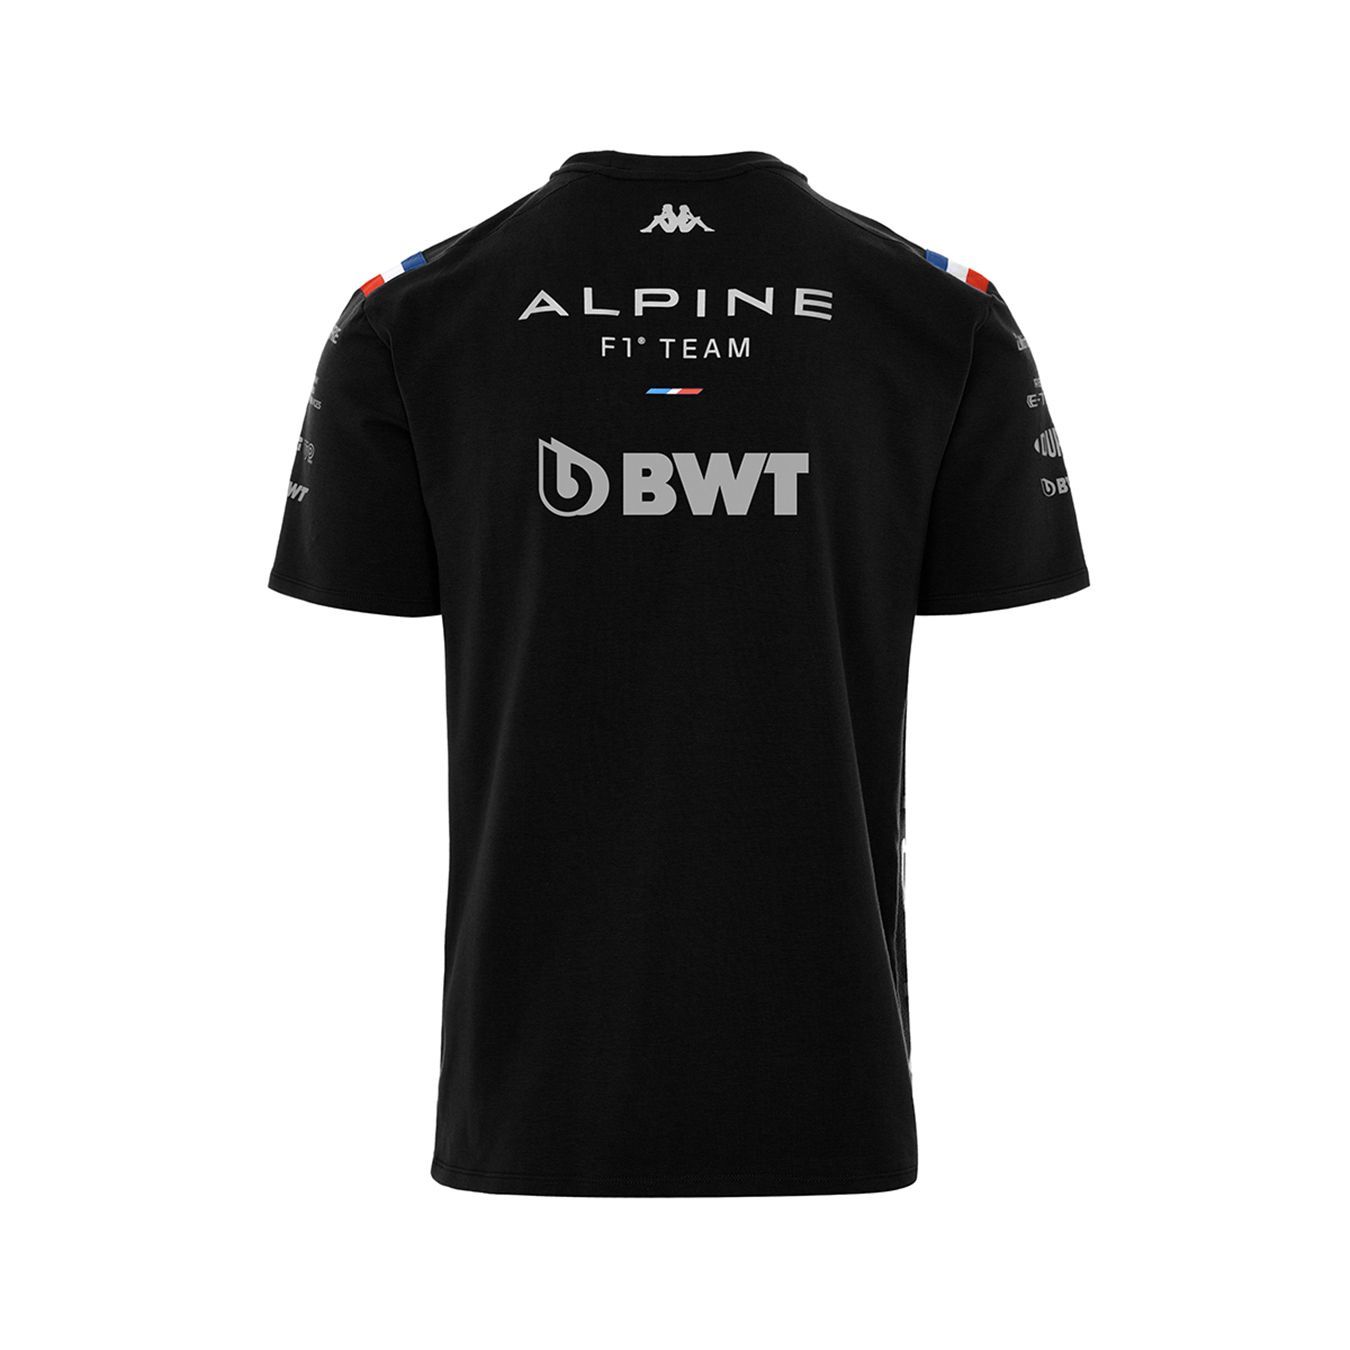 T-shirt noir ALPINE F1 Team Coton - Homme